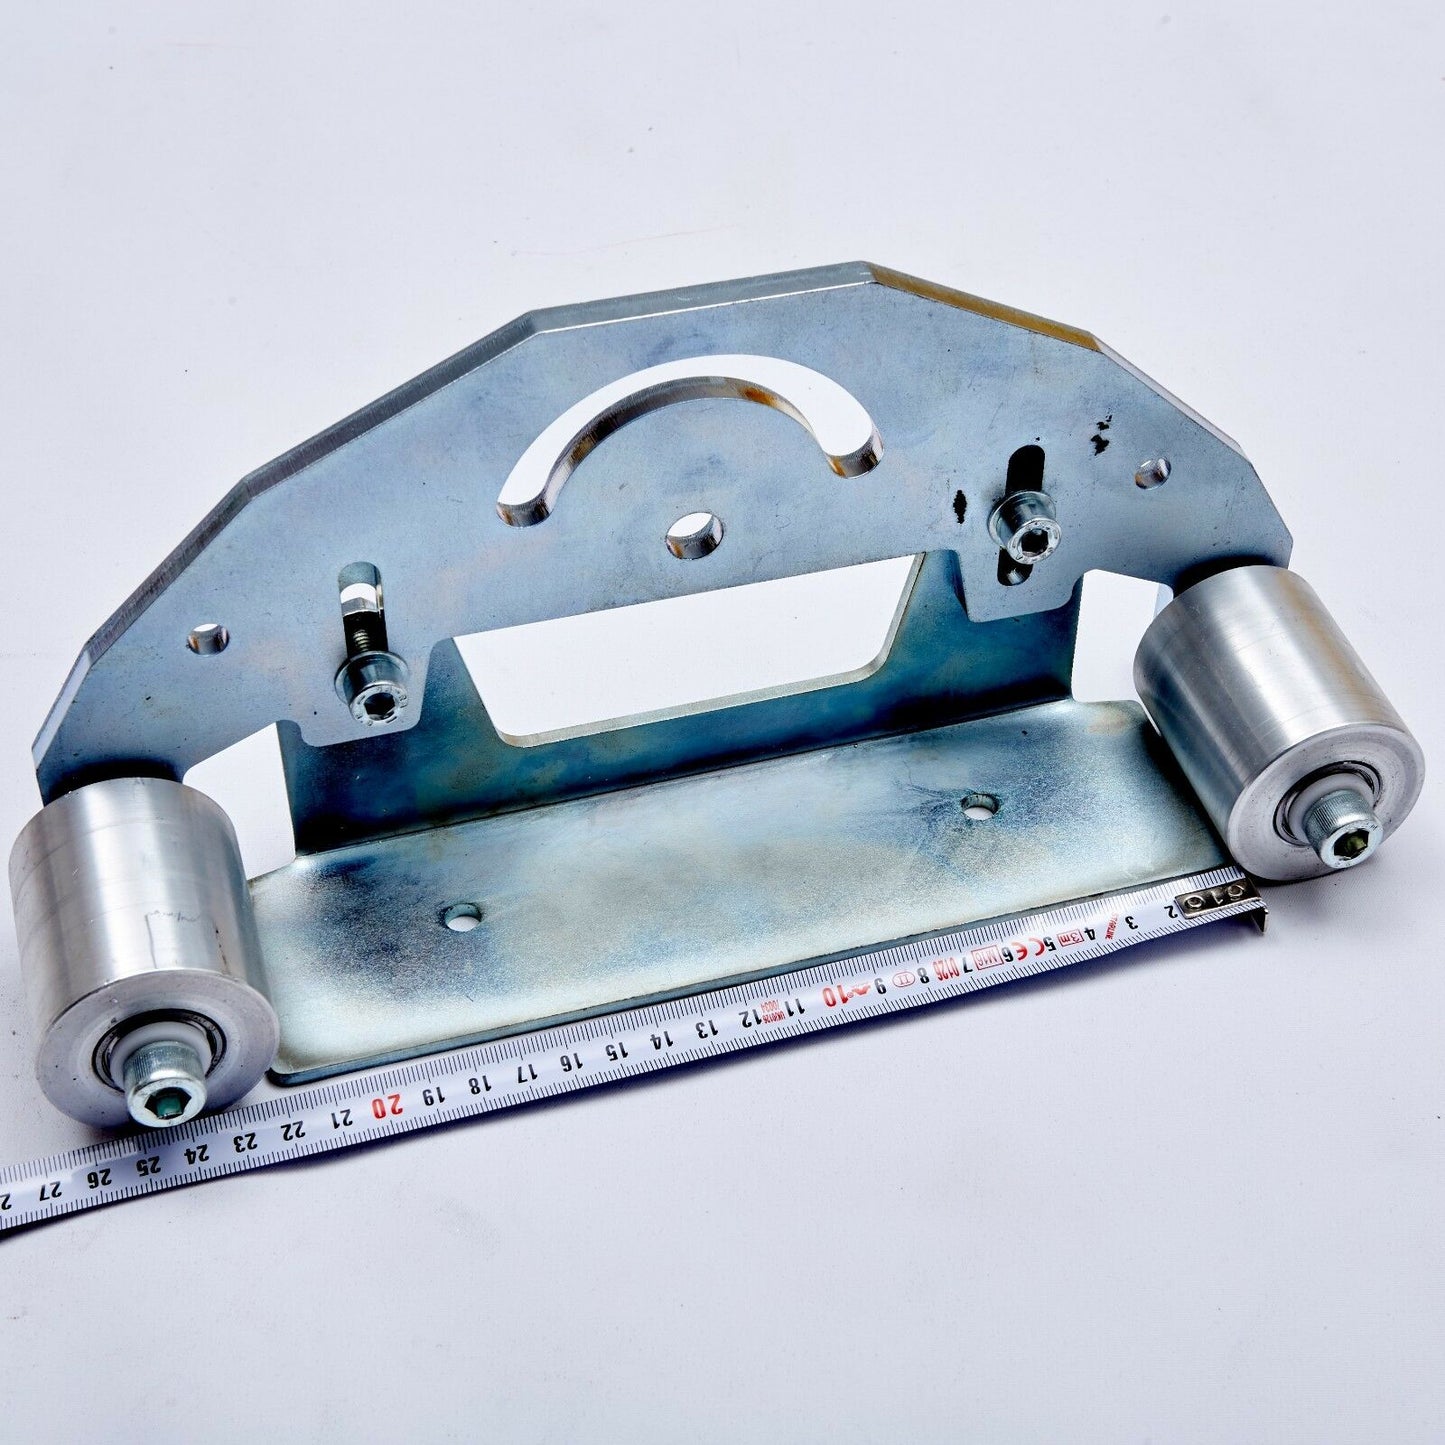 Belt Grinder D-Backing Plate for 2x72" Knife Making Grinder with Wheelss COMPLETE